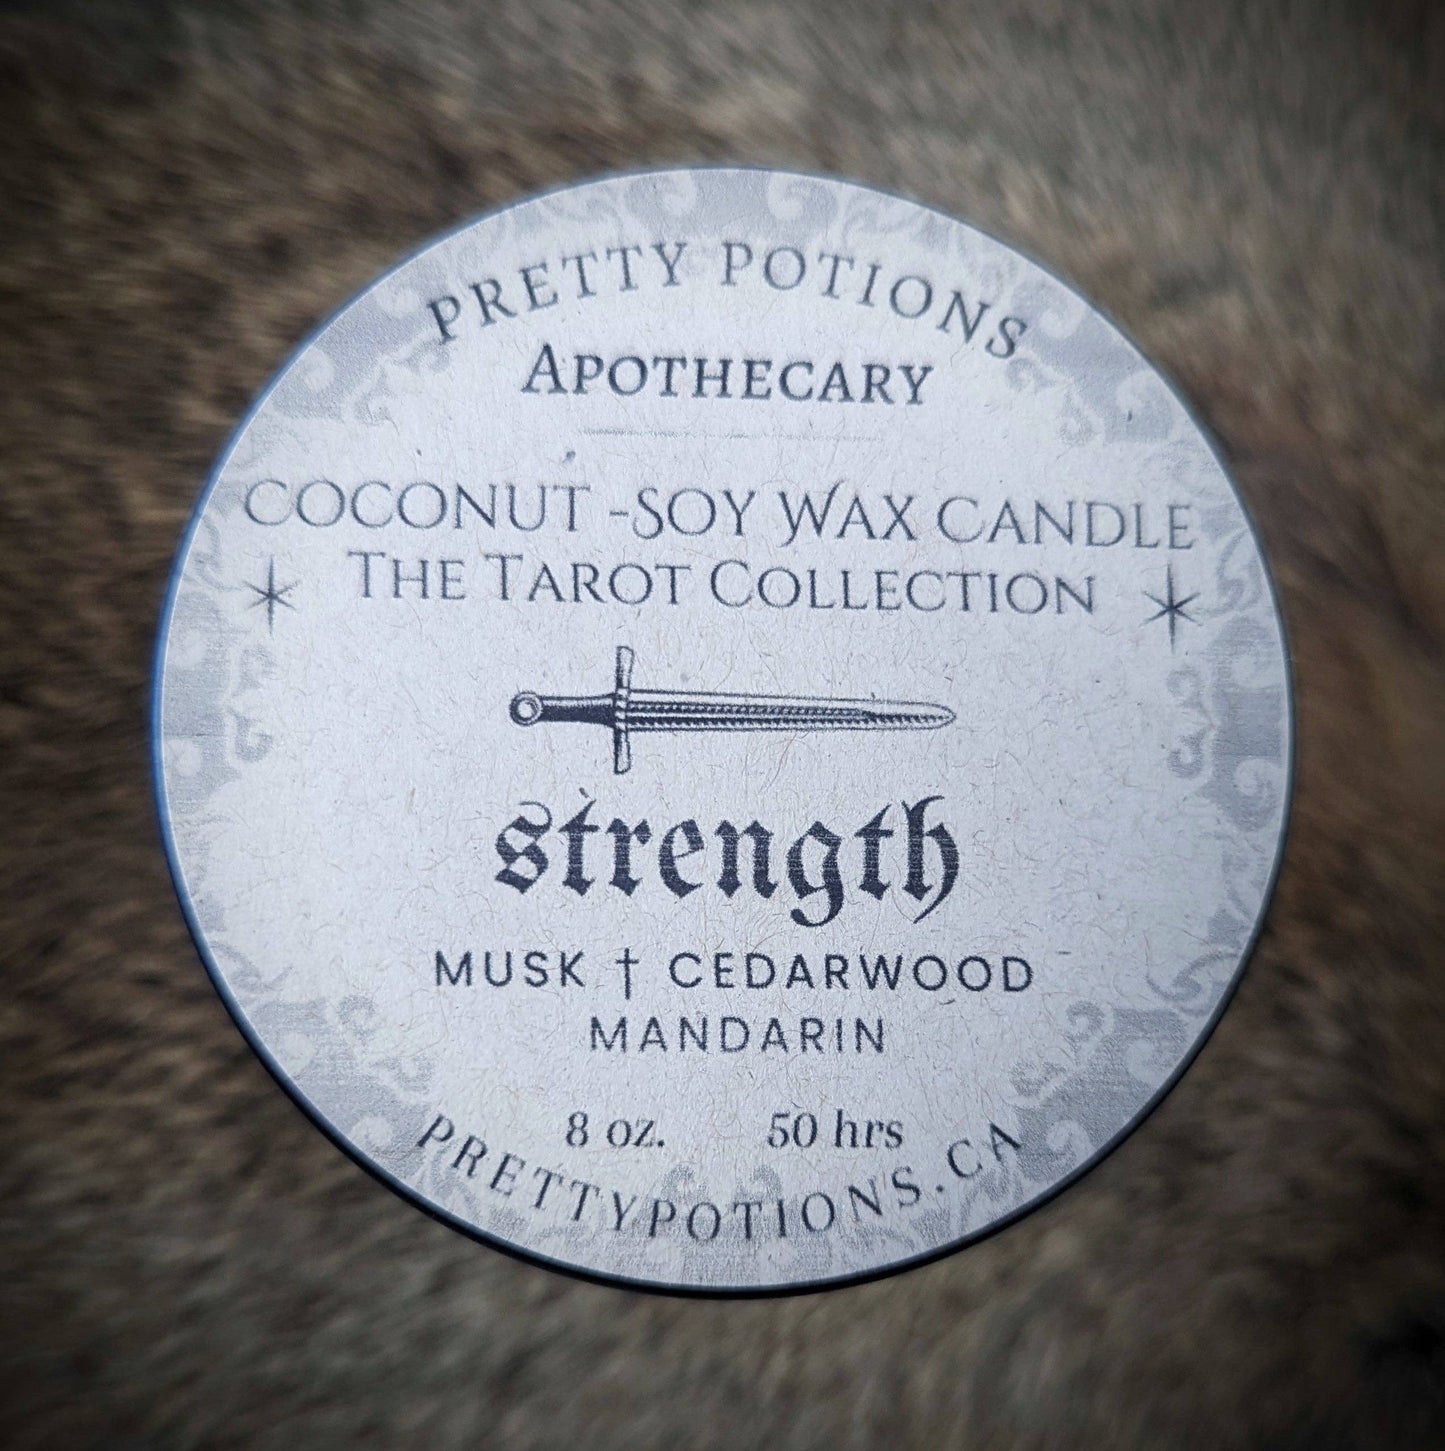 strength tarot card candle top with cedar wood and mandarin scent